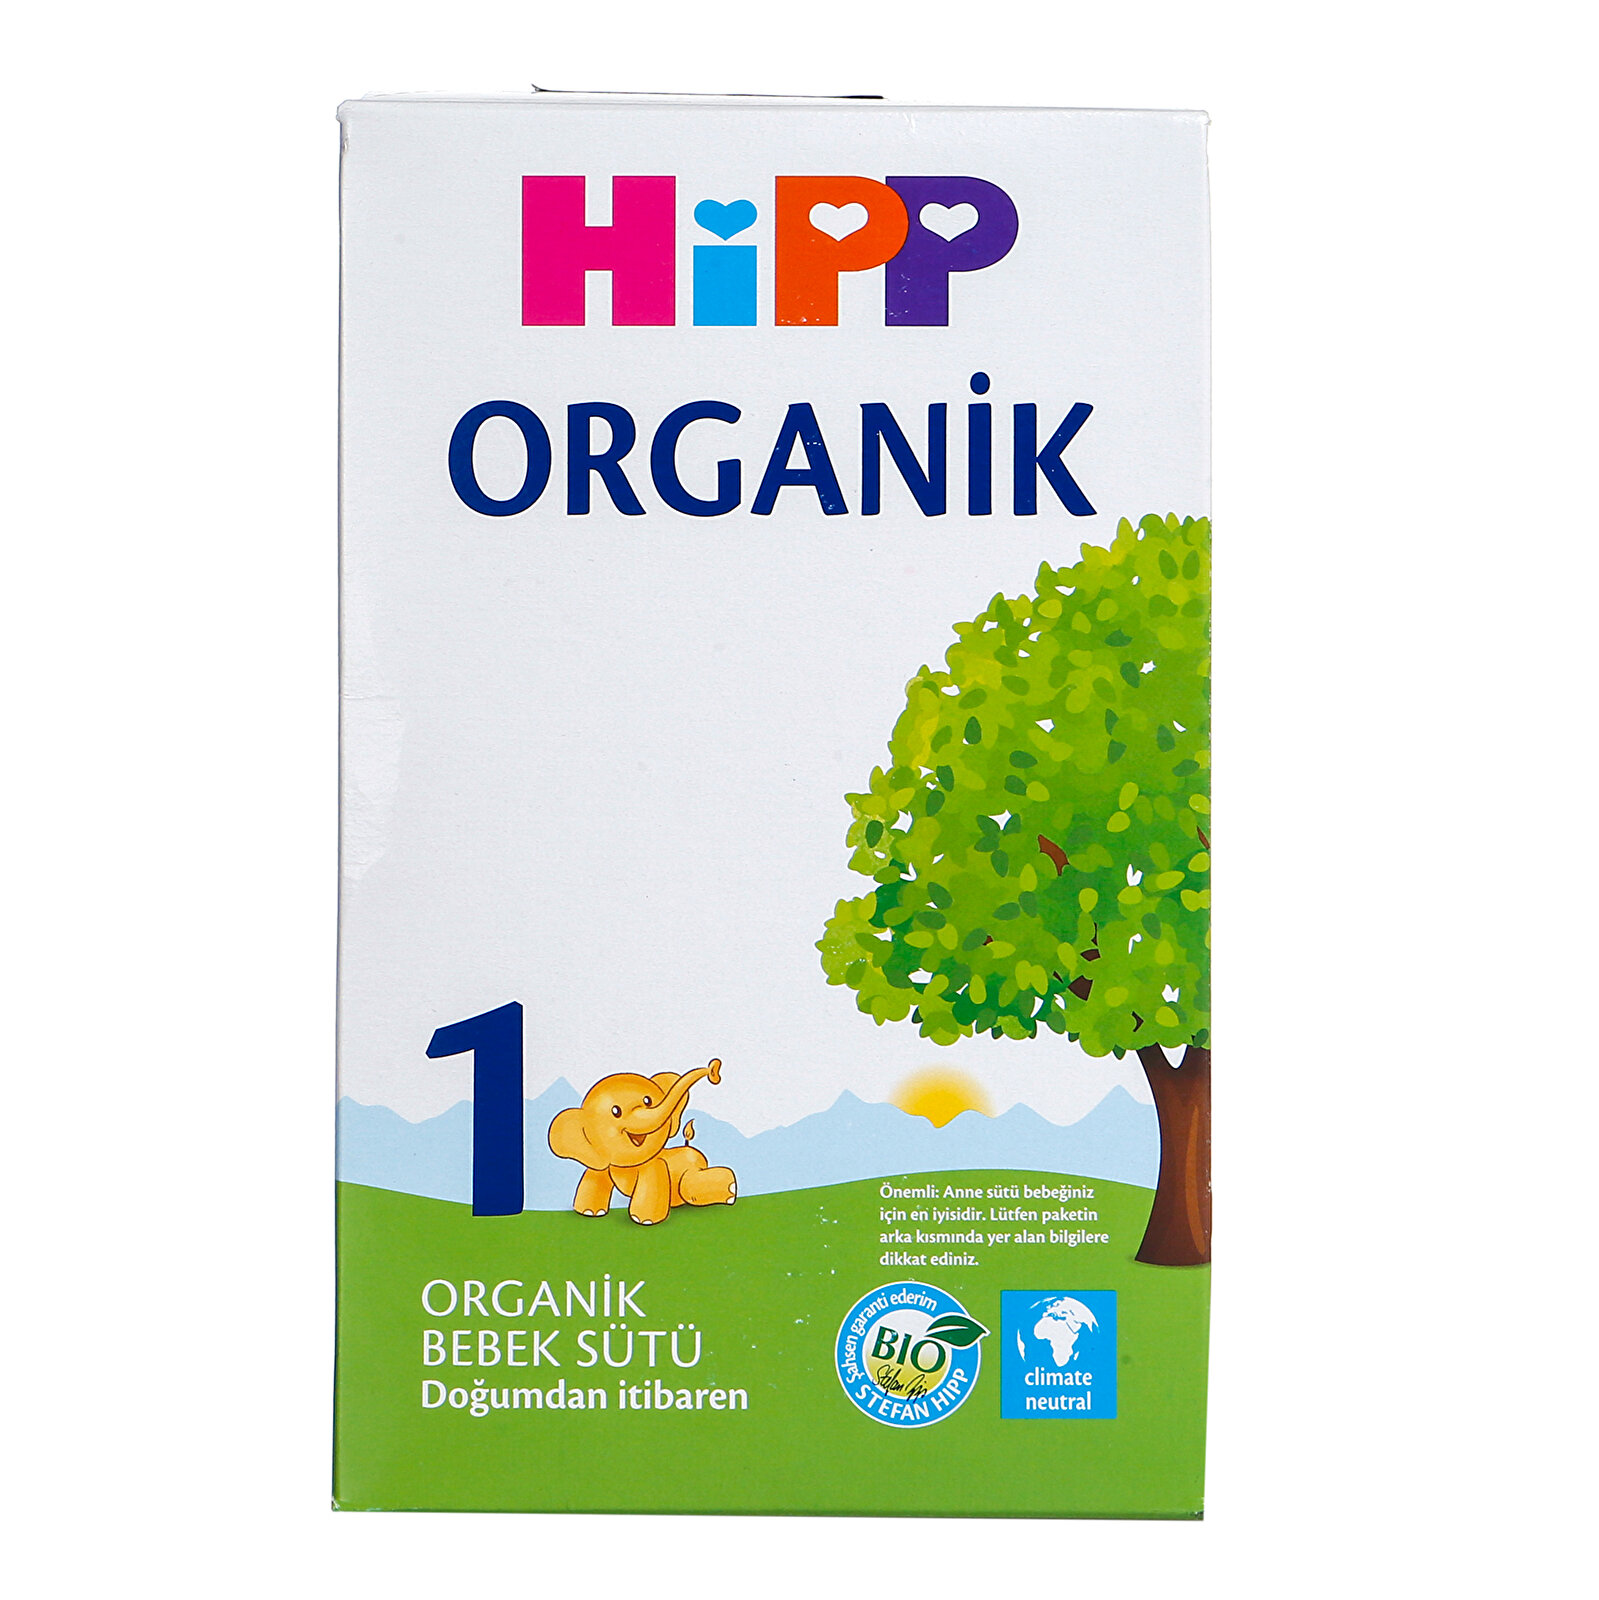 1 Organik Bebek Sütü 600 gr